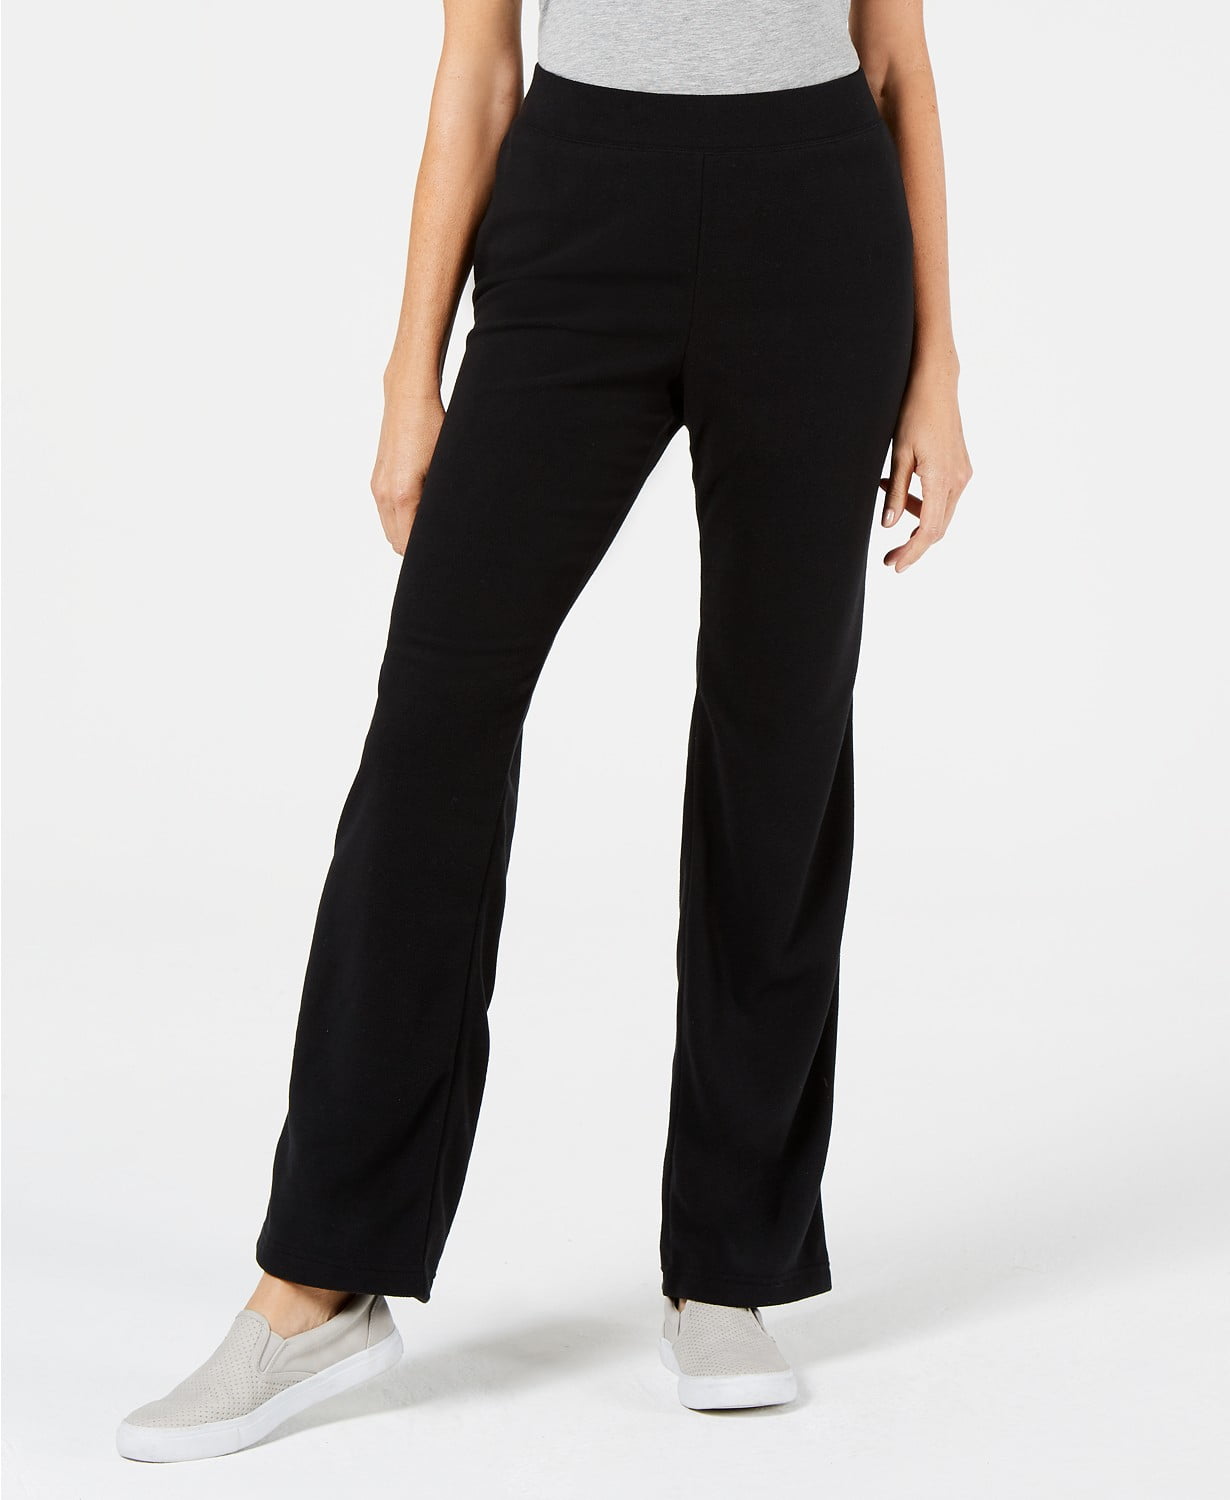 Karen Scott - Women's Sweatpants Pull-On Mirco Fleece XL - Walmart.com ...